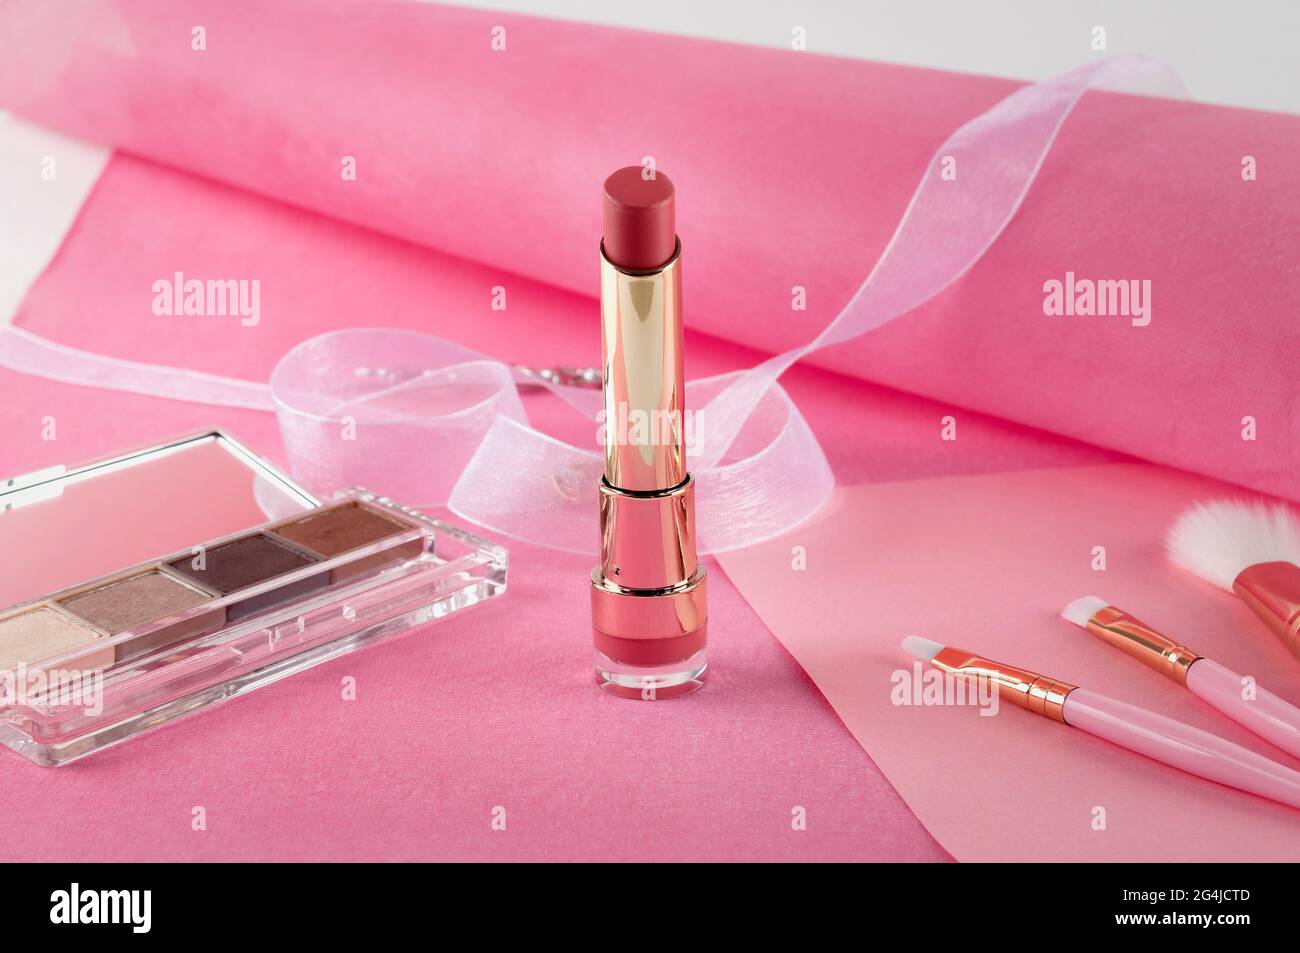 Schönes Stillleben von Kosmetika, Accessoires und Schmuck auf einem rosa Hintergrund. Stockfoto